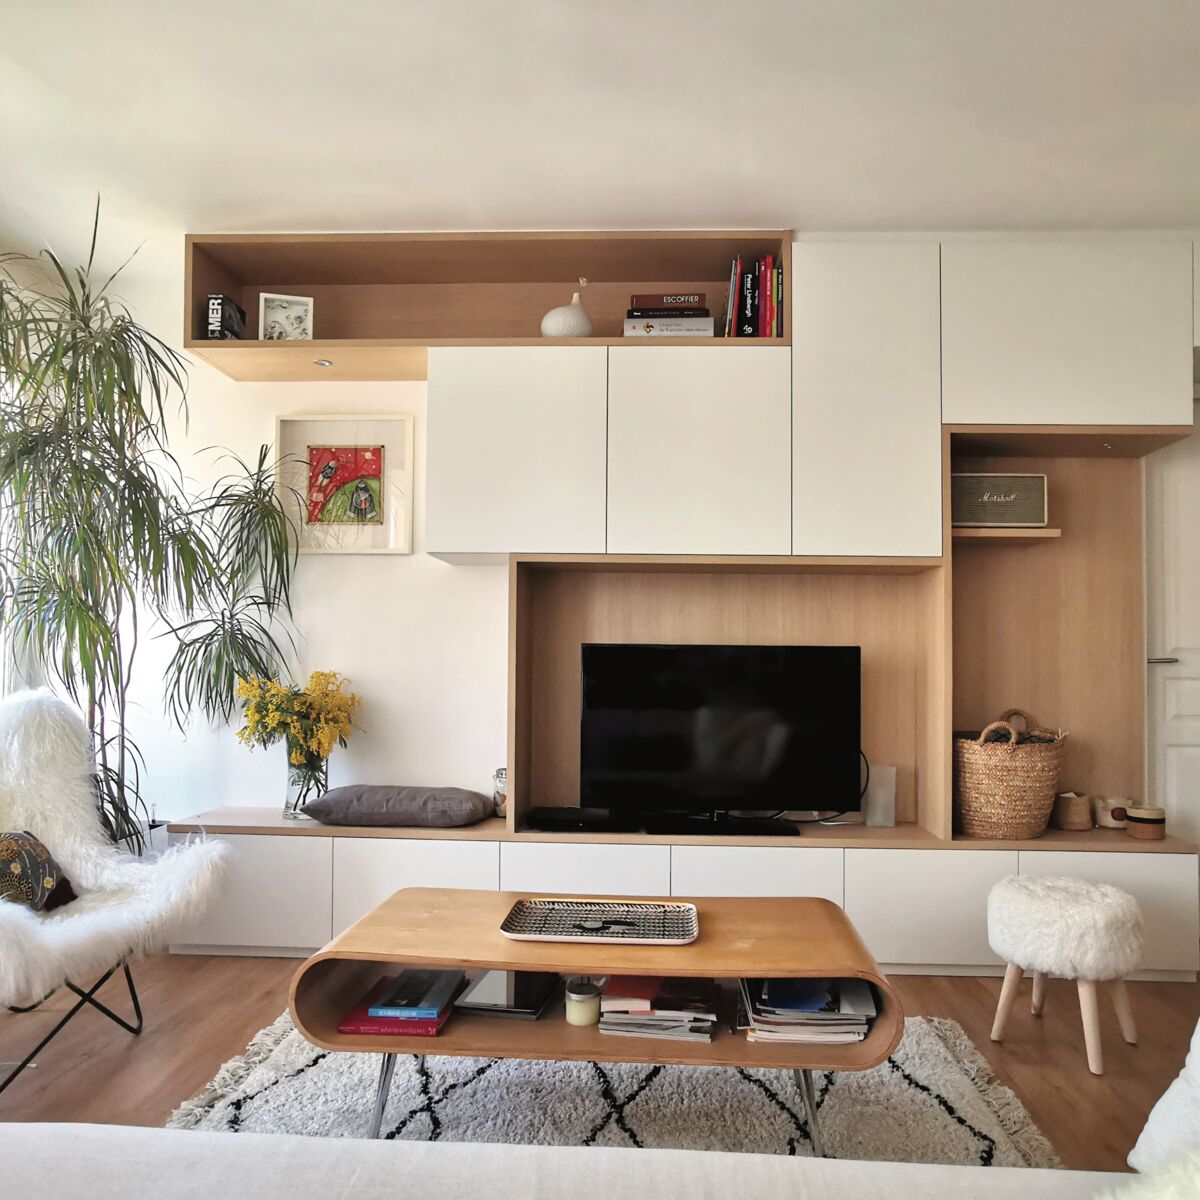 Optimiser l'espace d'un petit appartement [8 idées rangement